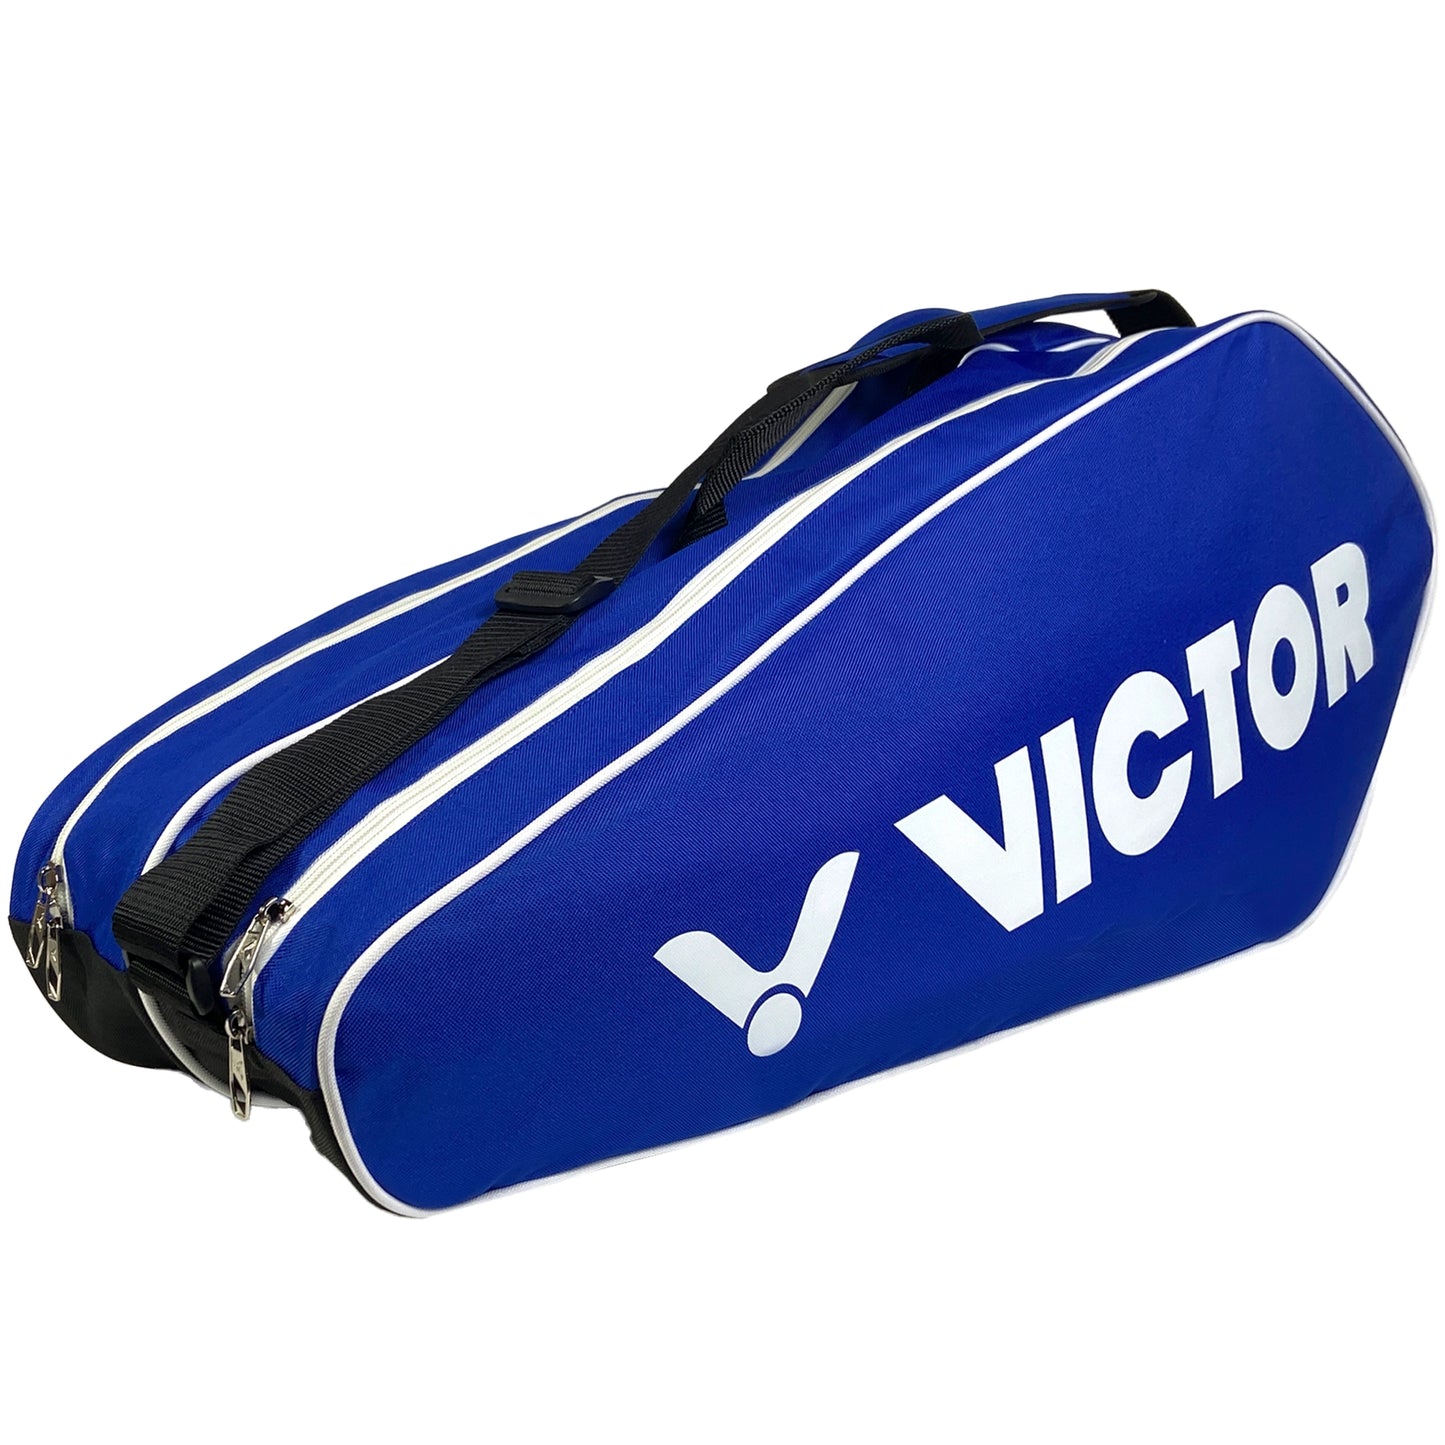 Victor 12-Piece Racket Bag BR6211-FC Blue/Black